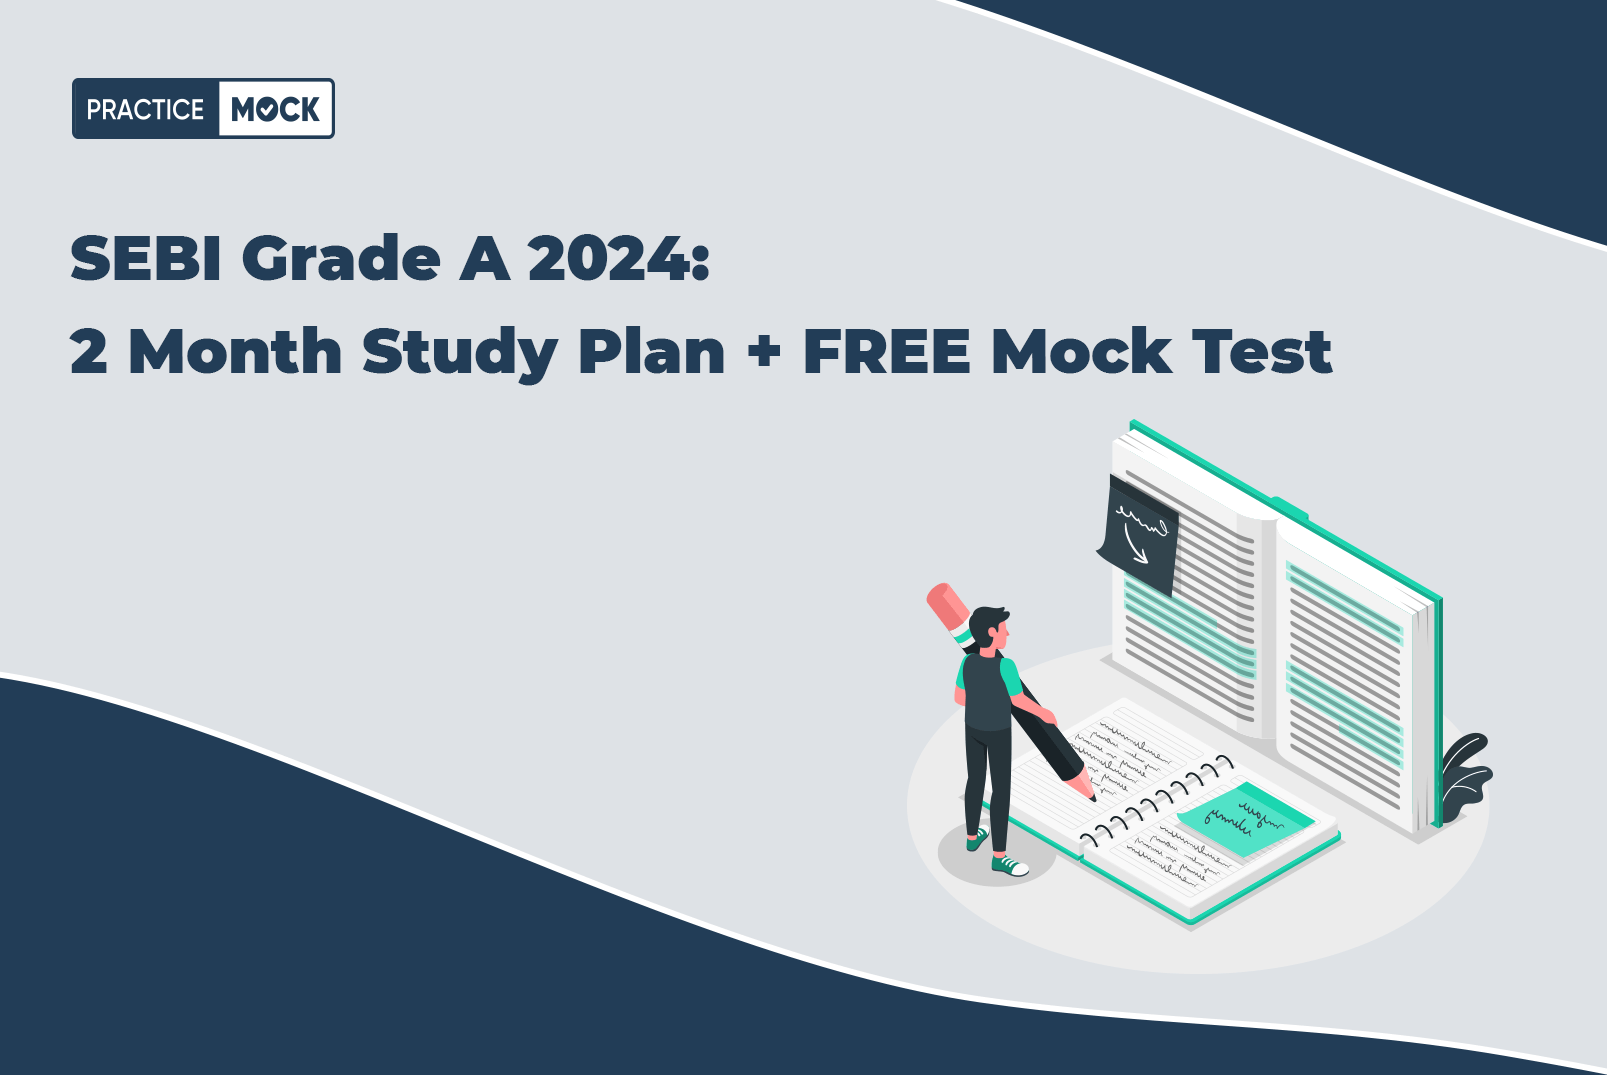 SEBI Grade A 2024: 2 Month Study Plan + FREE Mock Test